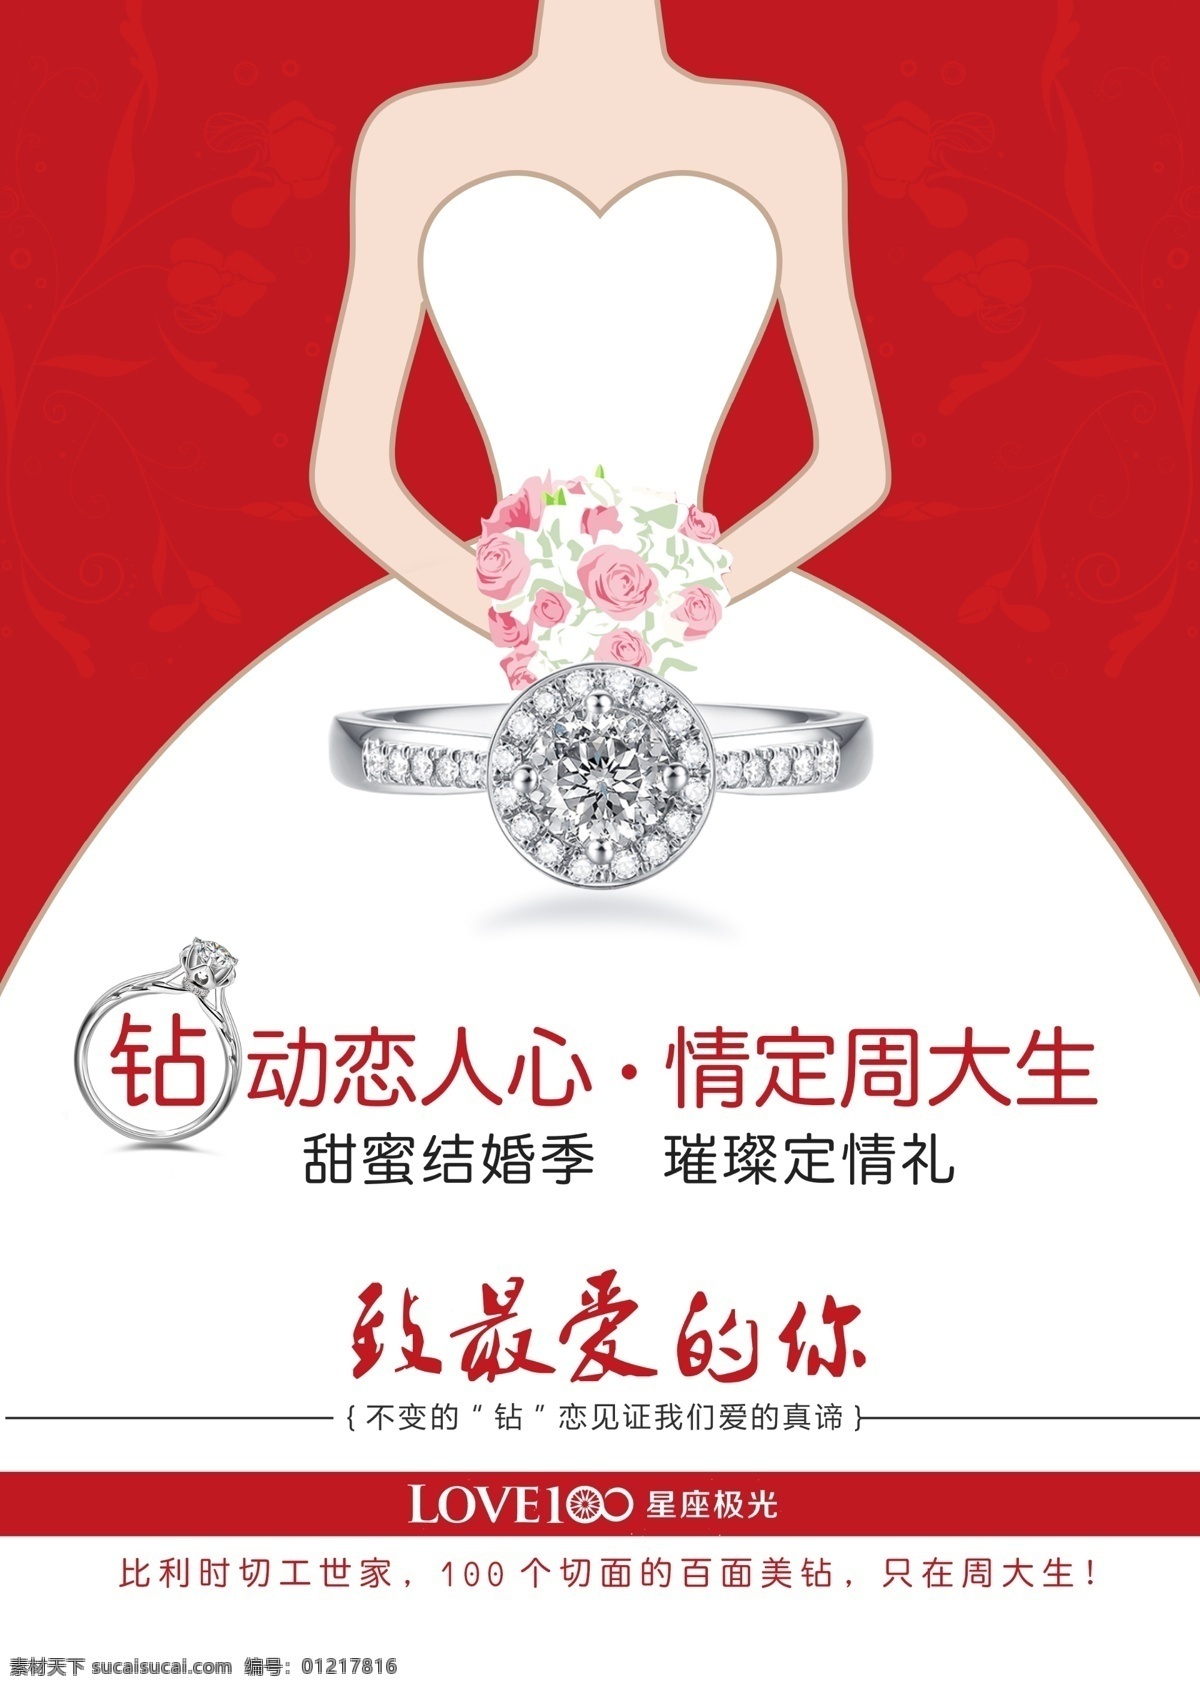 钻戒 dm 宣传单 珠宝 彩页 红色 结婚季 dm宣传单